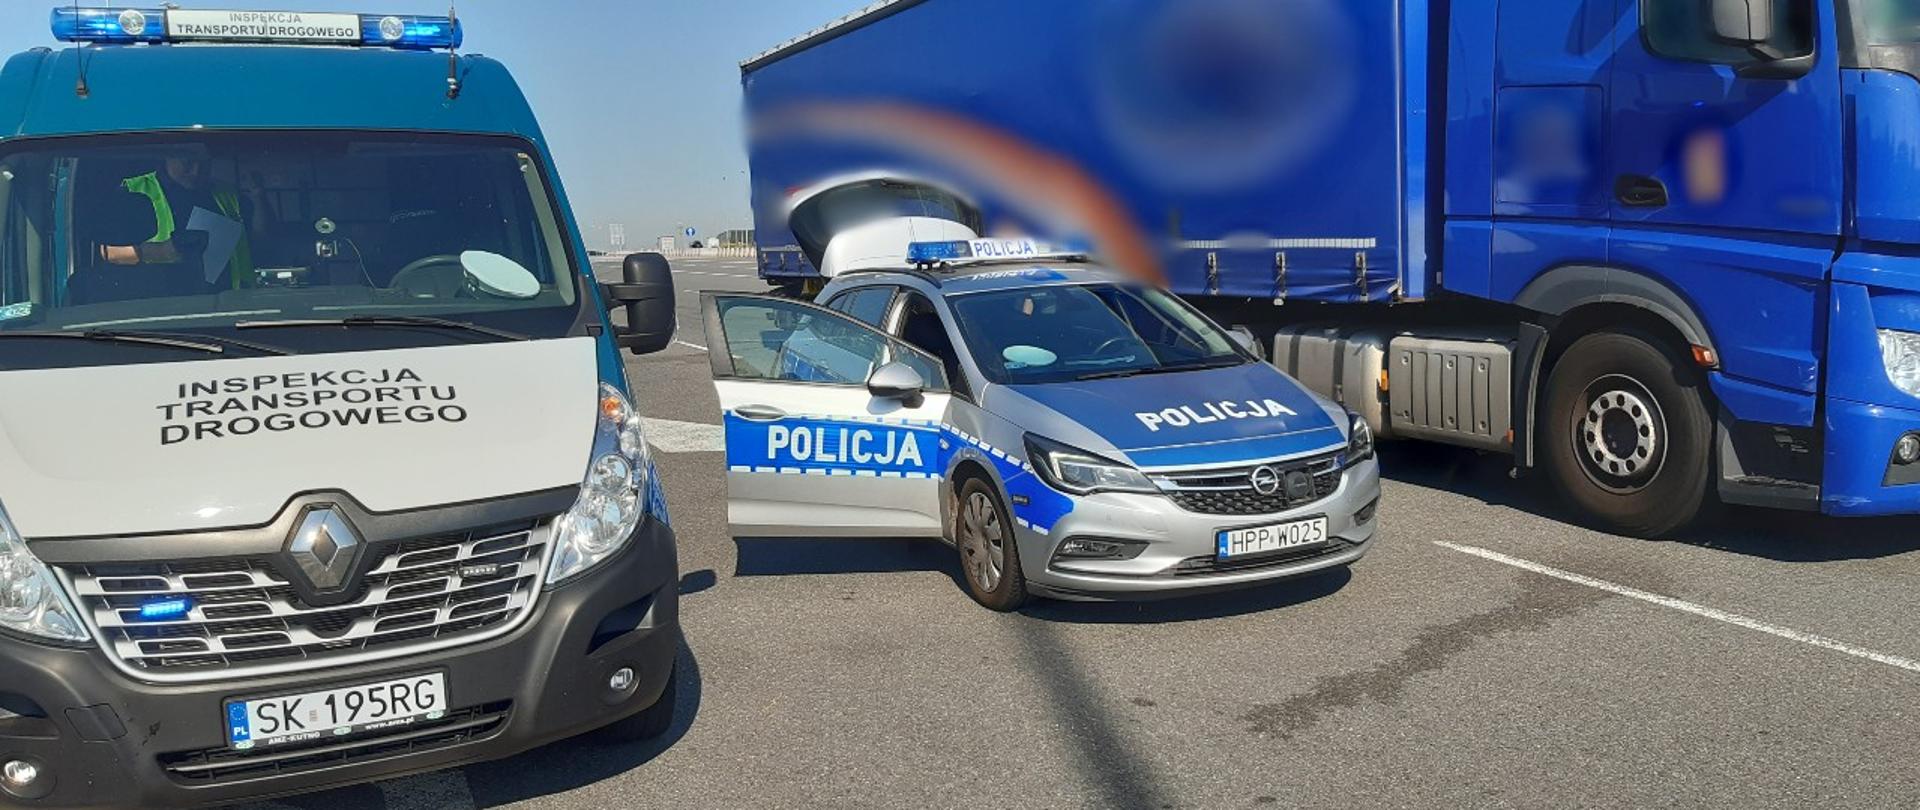 Od lewej: oznakowany radiowóz ITD typu furgon, oznakowany radiowóz Policji i zatrzymany do kontroli samochód ciężarowy z naczepą. W tle widoczny fragment autostrady A1.